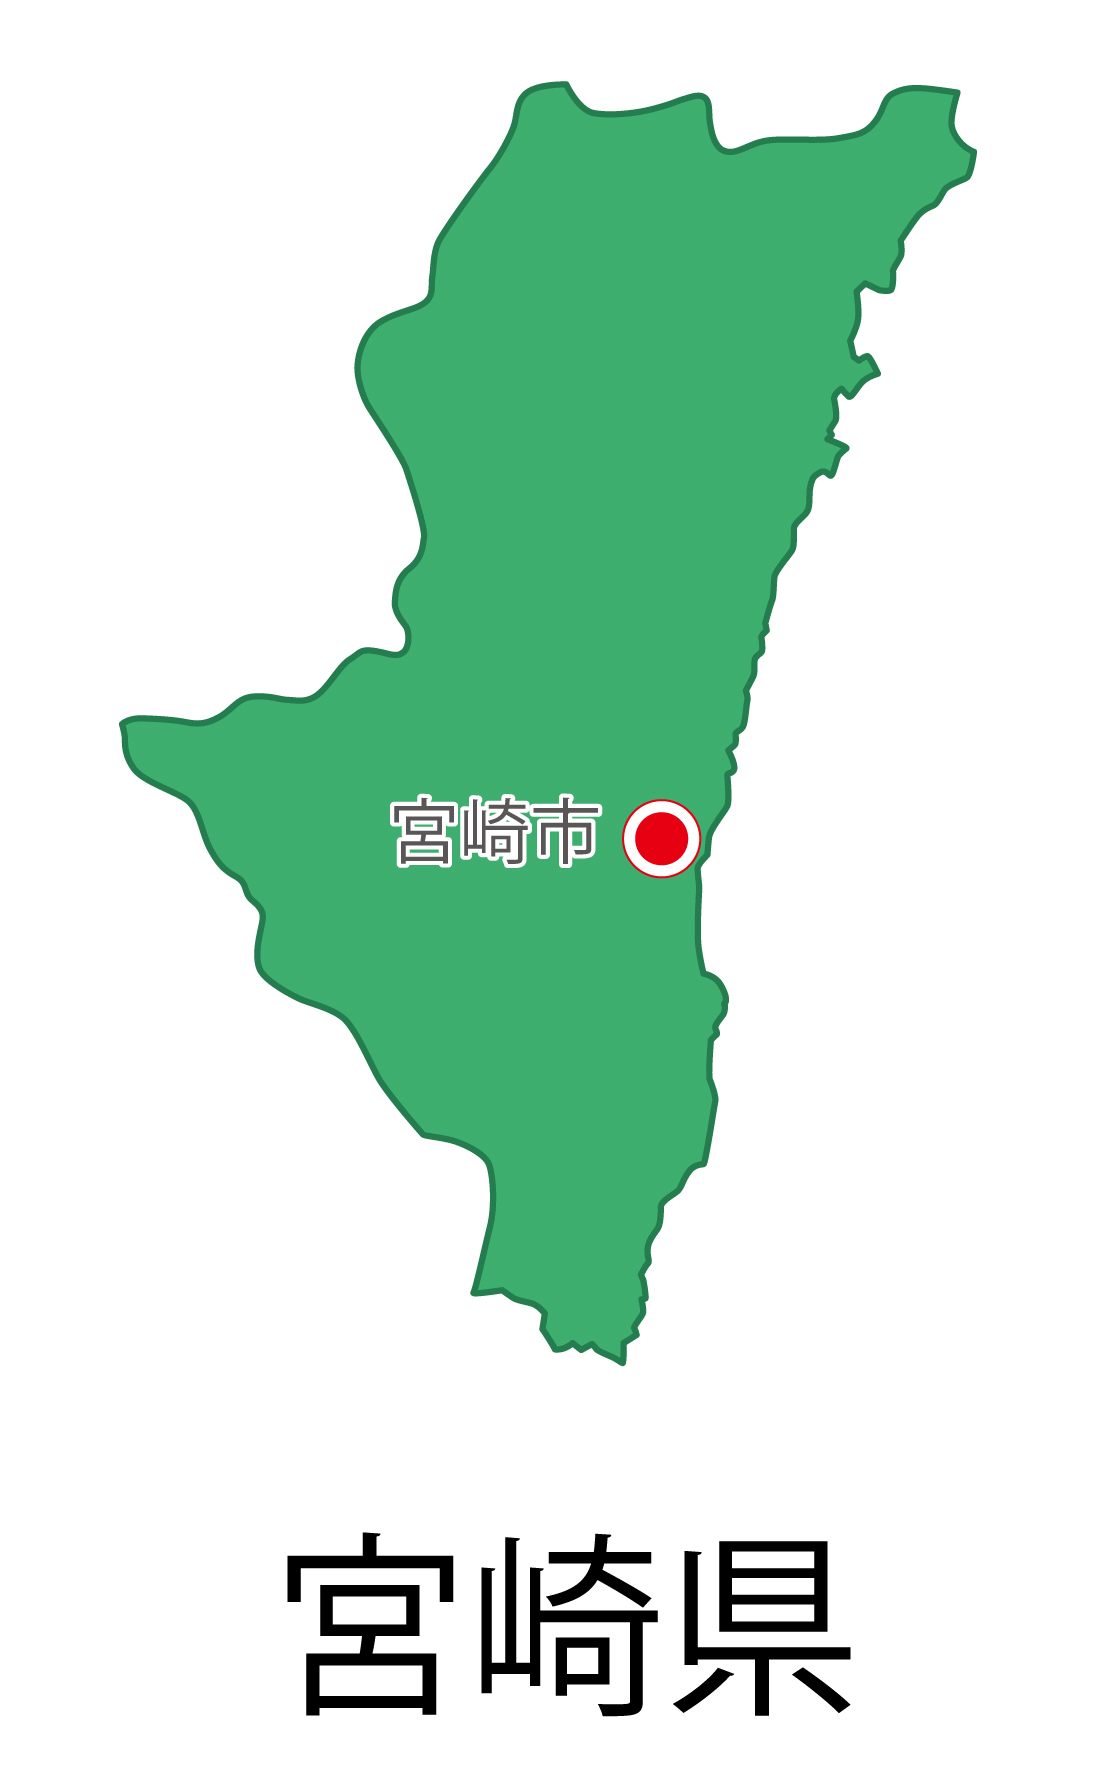 宮崎県の地図イラスト フリー素材 を無料ダウンロード